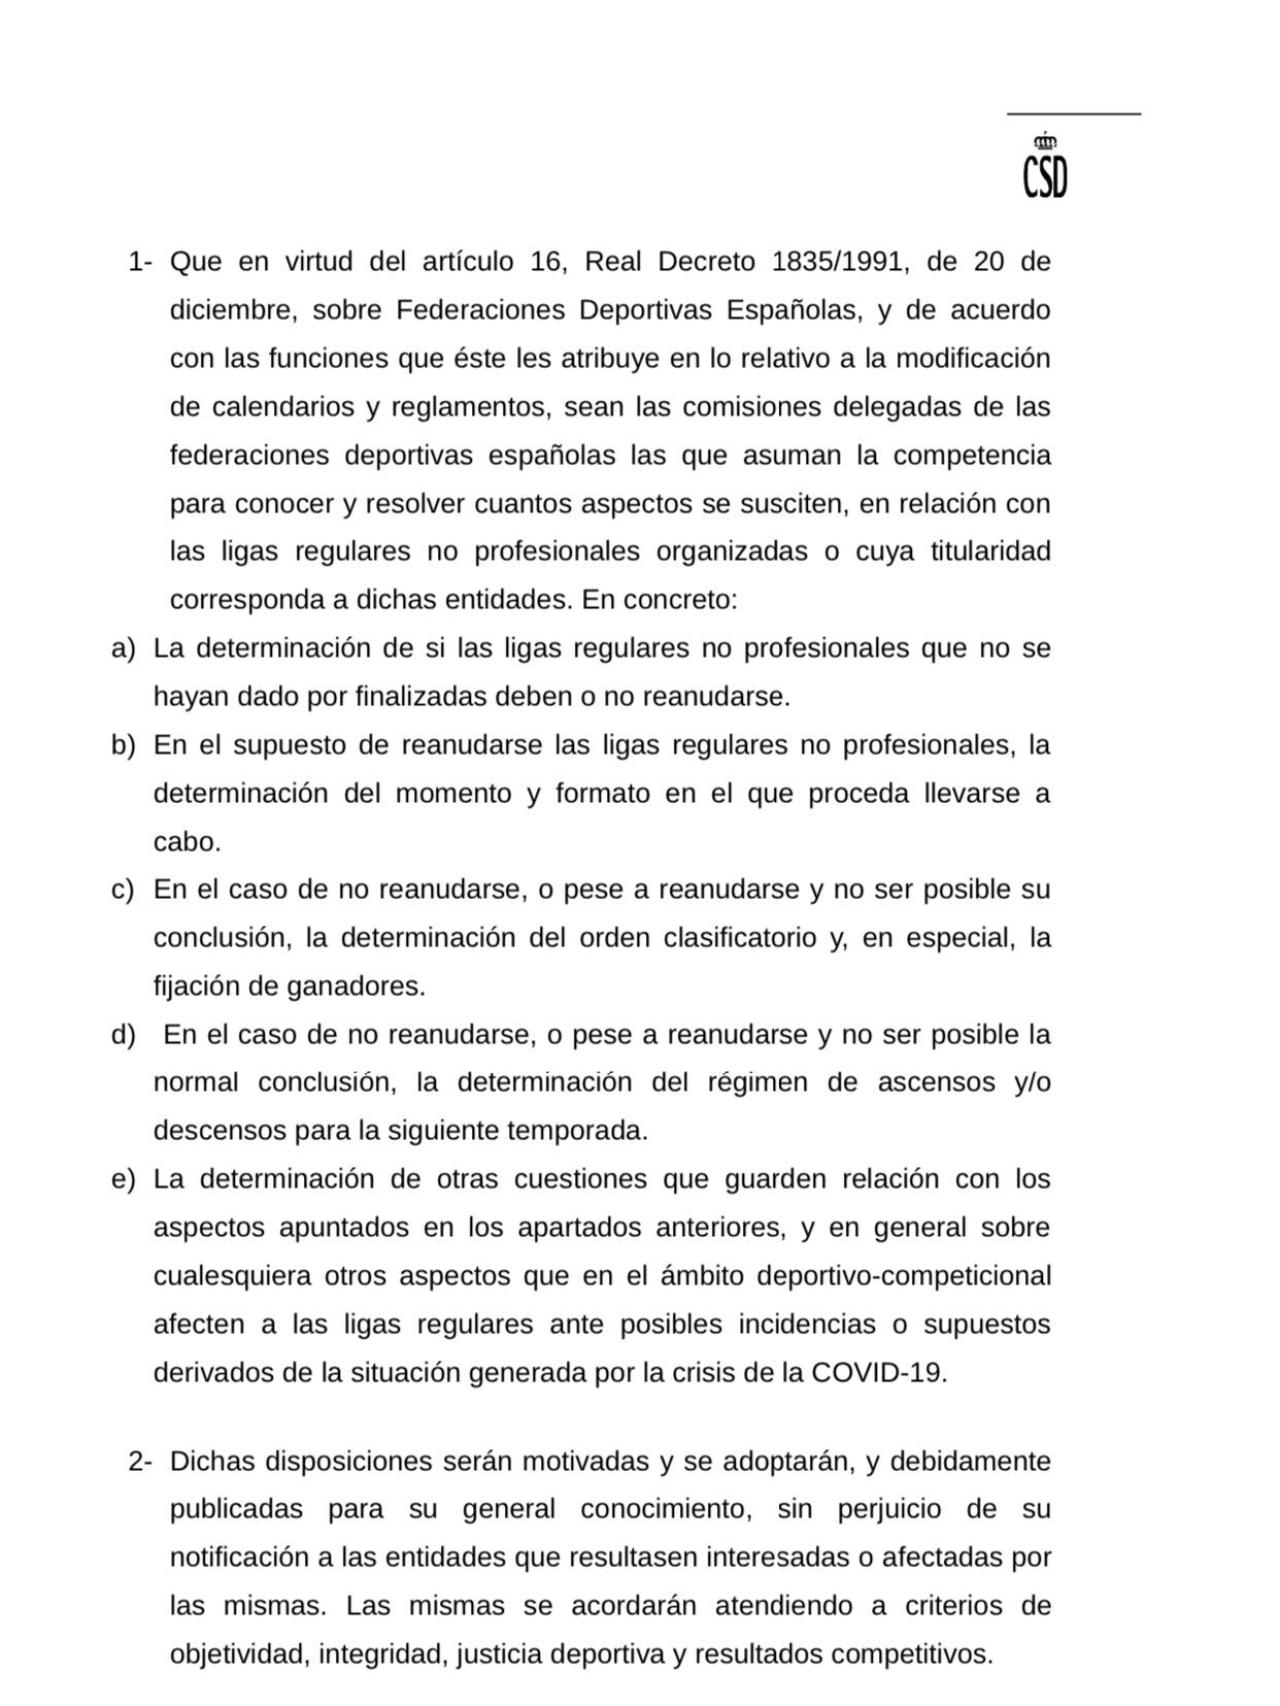 El documento del CSD que condiciona la finalización de la temporada del fútbol no profesional